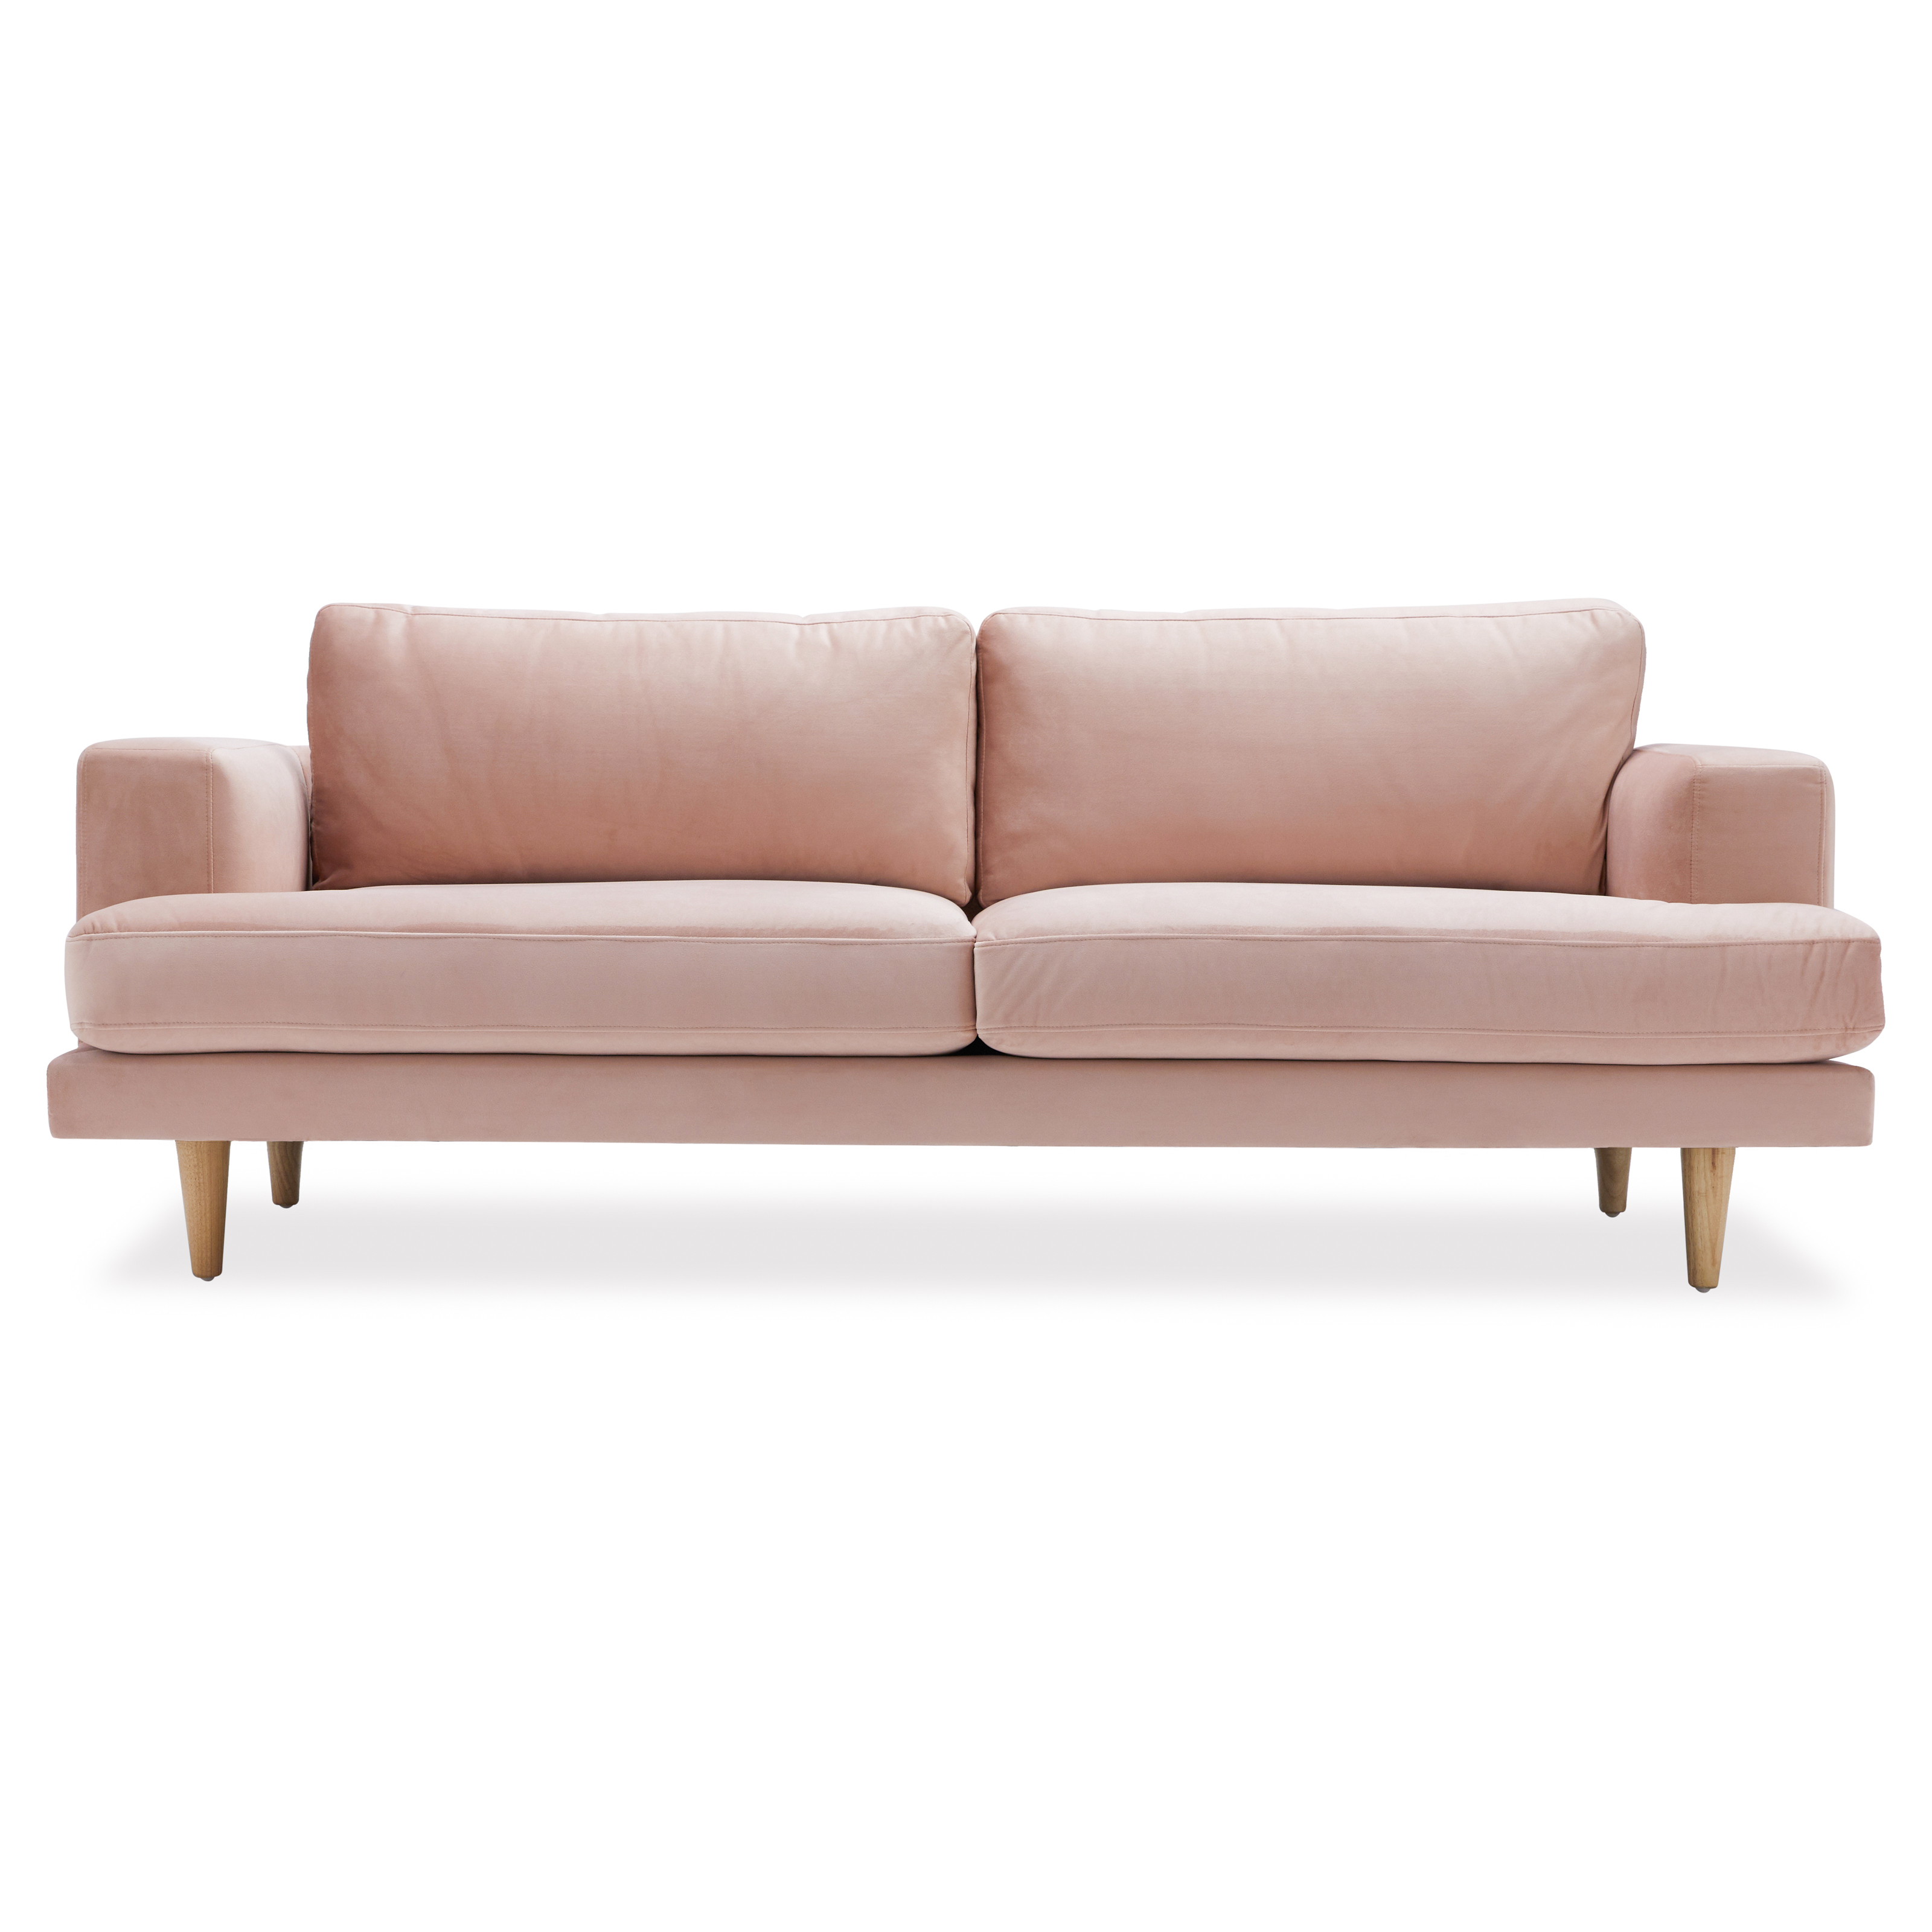 Drew Barrymore Flower Home Sofa, Pink Velvet - image 1 of 17